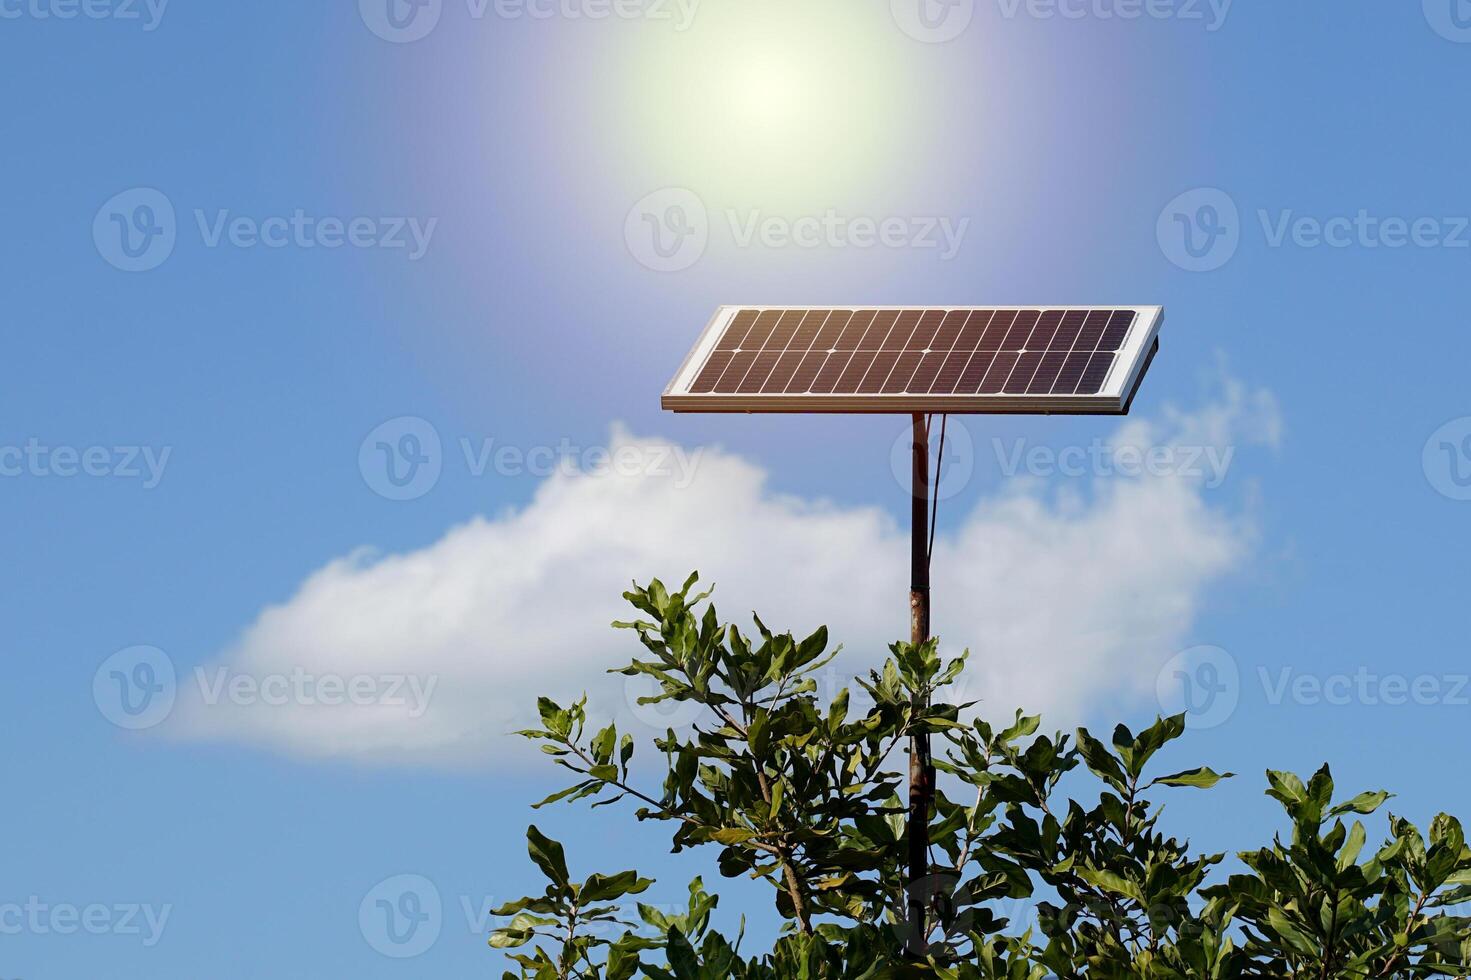 solarzelle erzeugt strom aus sonnenenergie, konzept, stromquelle, saubere energie, solarenergie, erneuerbare energie. weicher und selektiver Fokus. foto